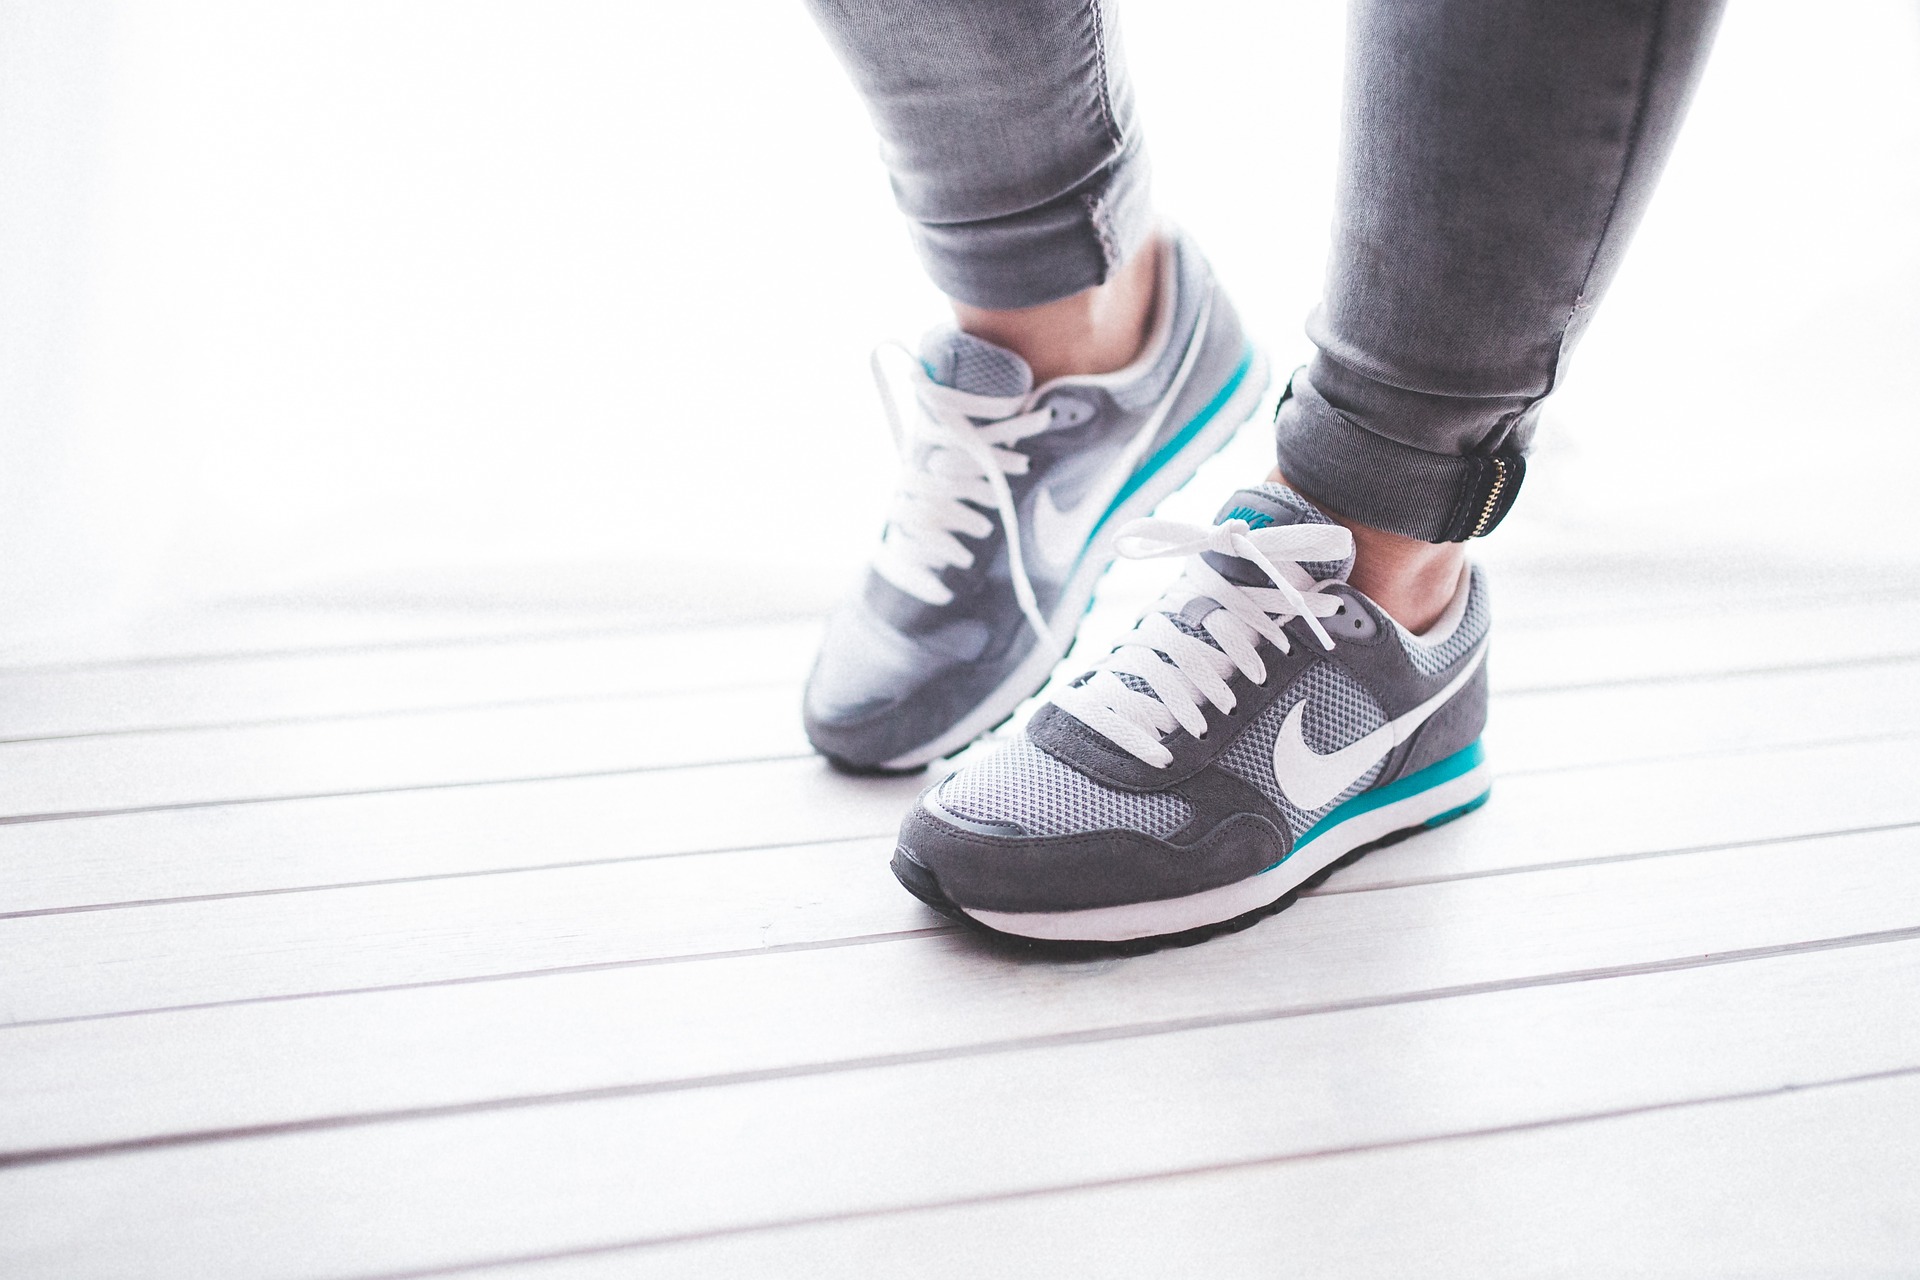 Buty do biegania – jakie mają zalety?